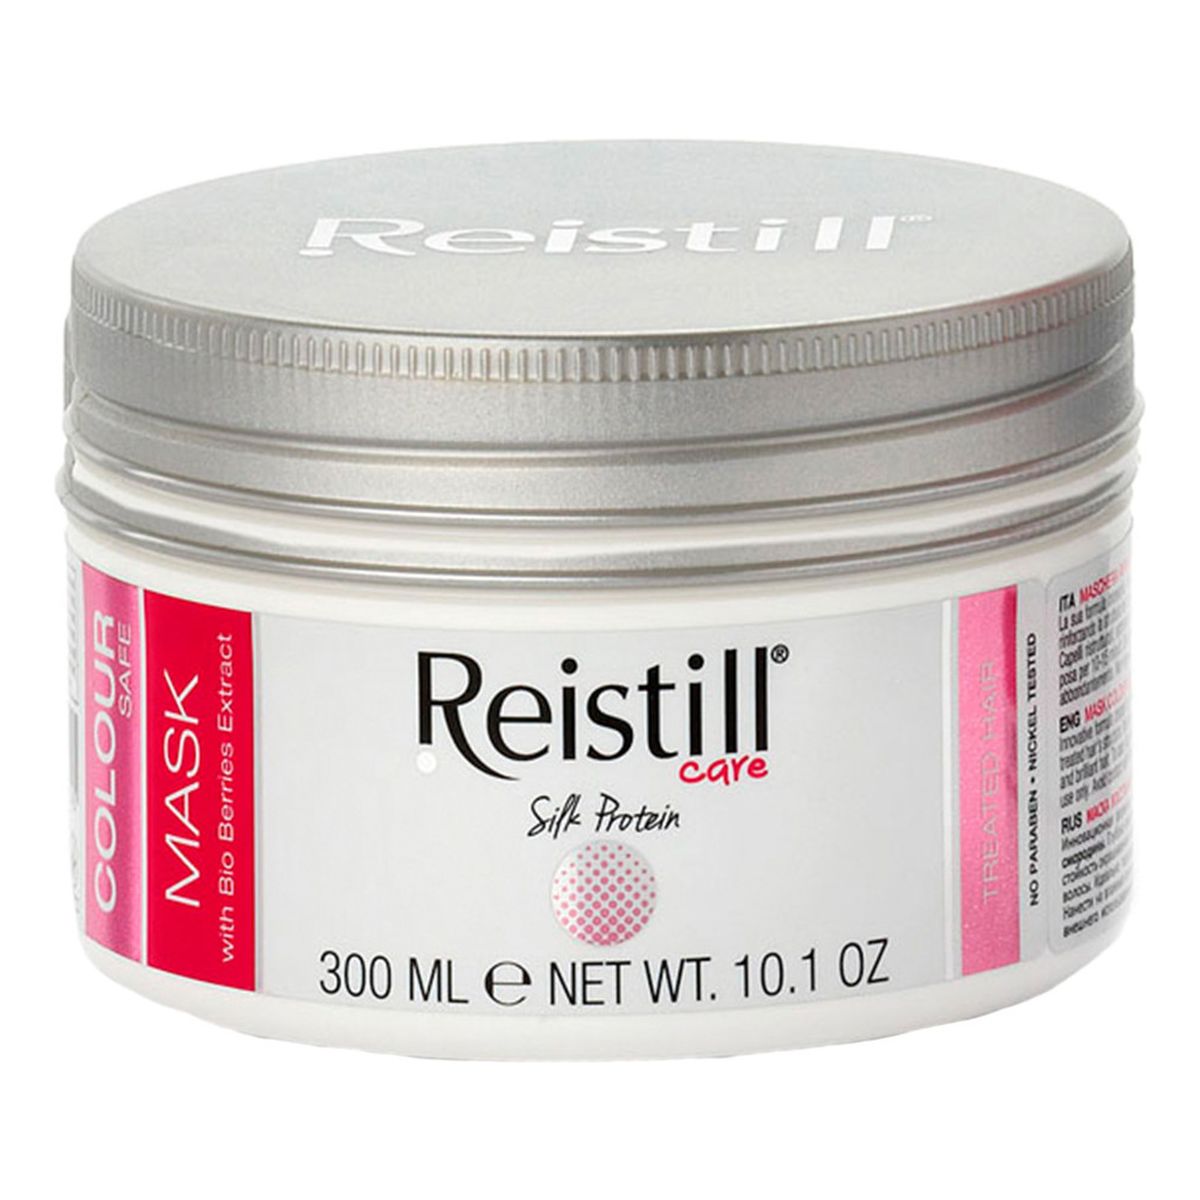 Reistill Colour Safe Maska do malowanych włosów 300ml